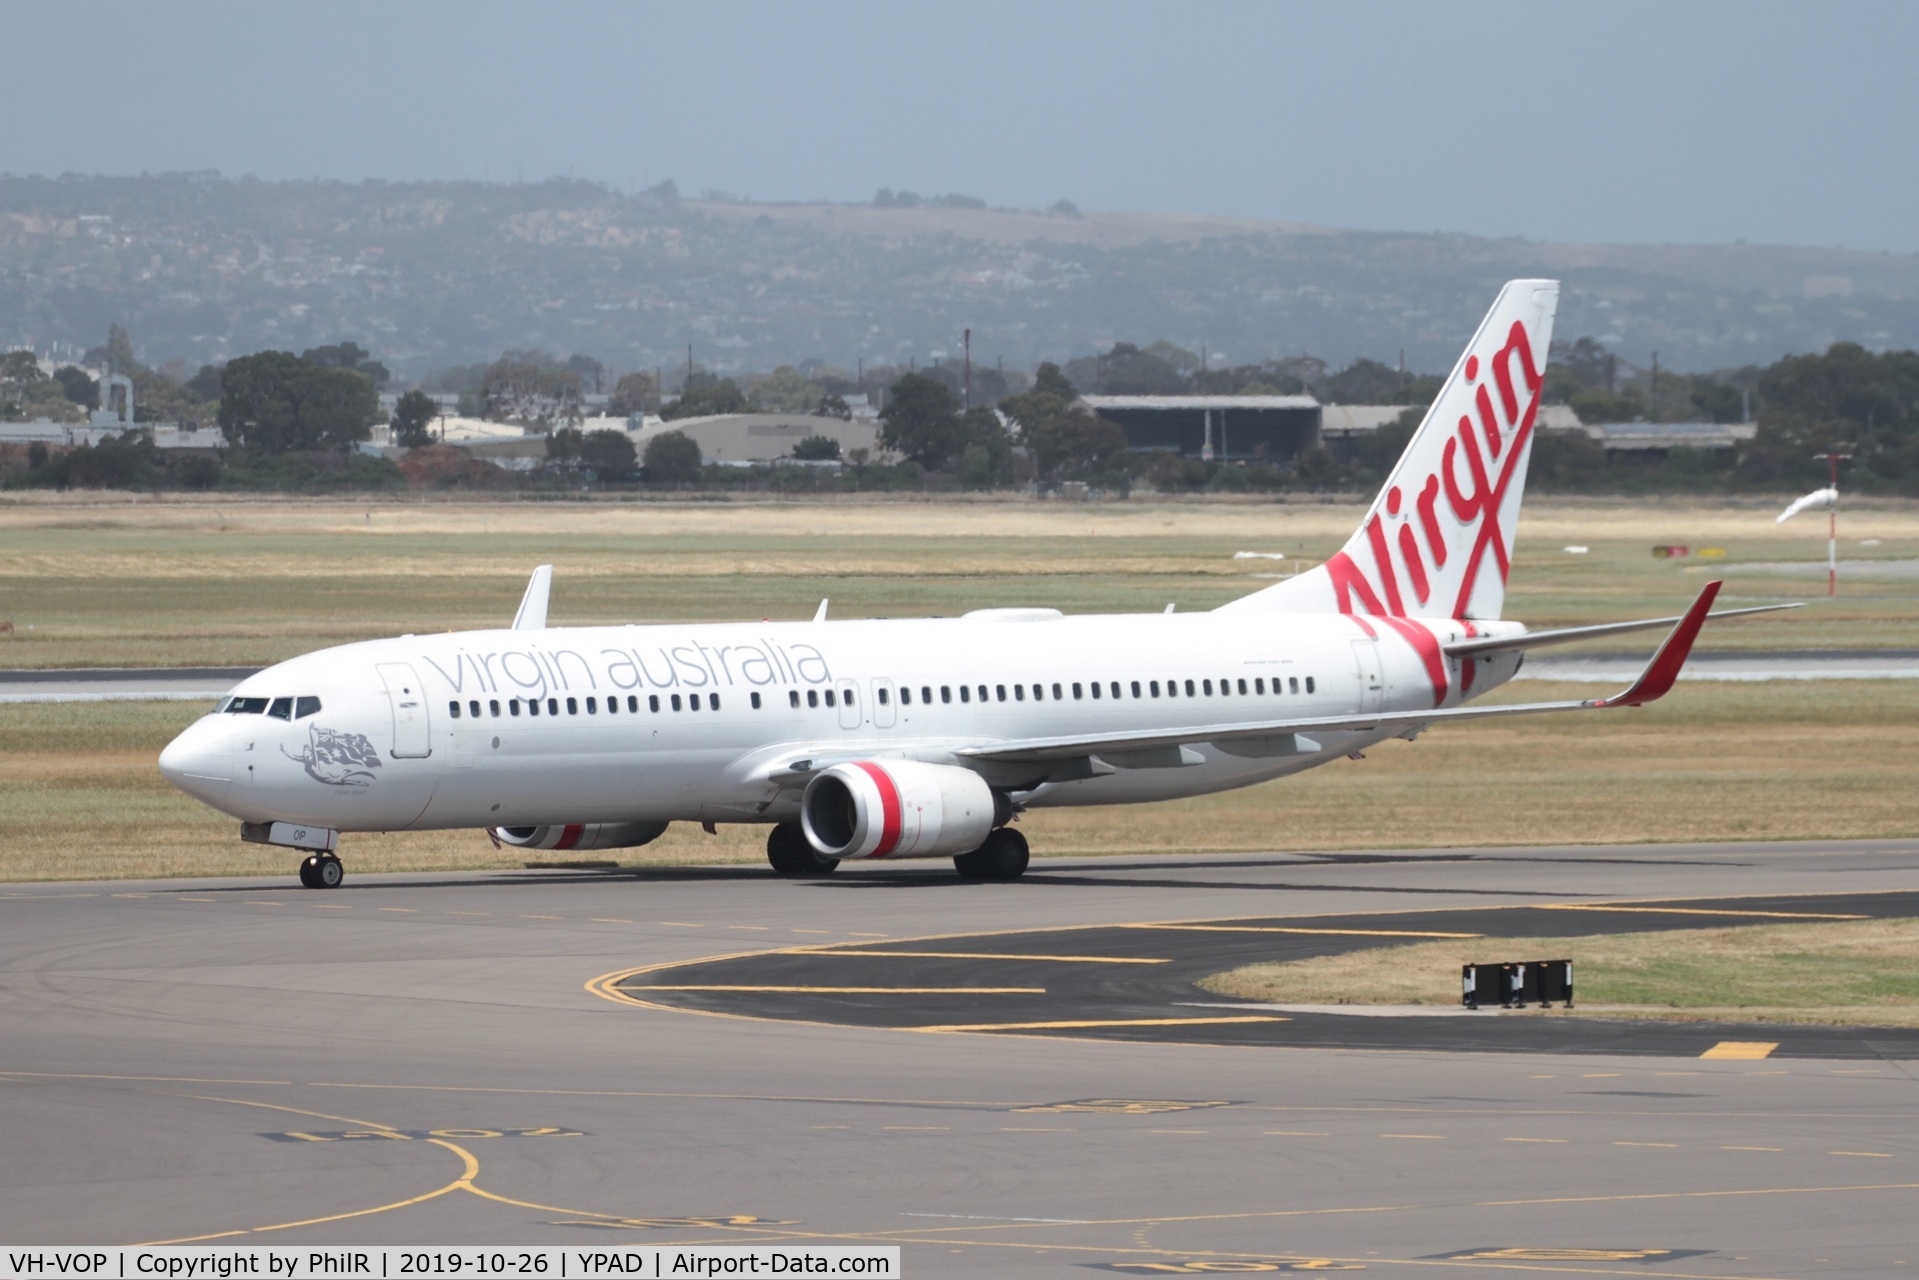 VH-VOP, 2003 Boeing 737-8FE C/N 33797, Tzxying in at Adelaide